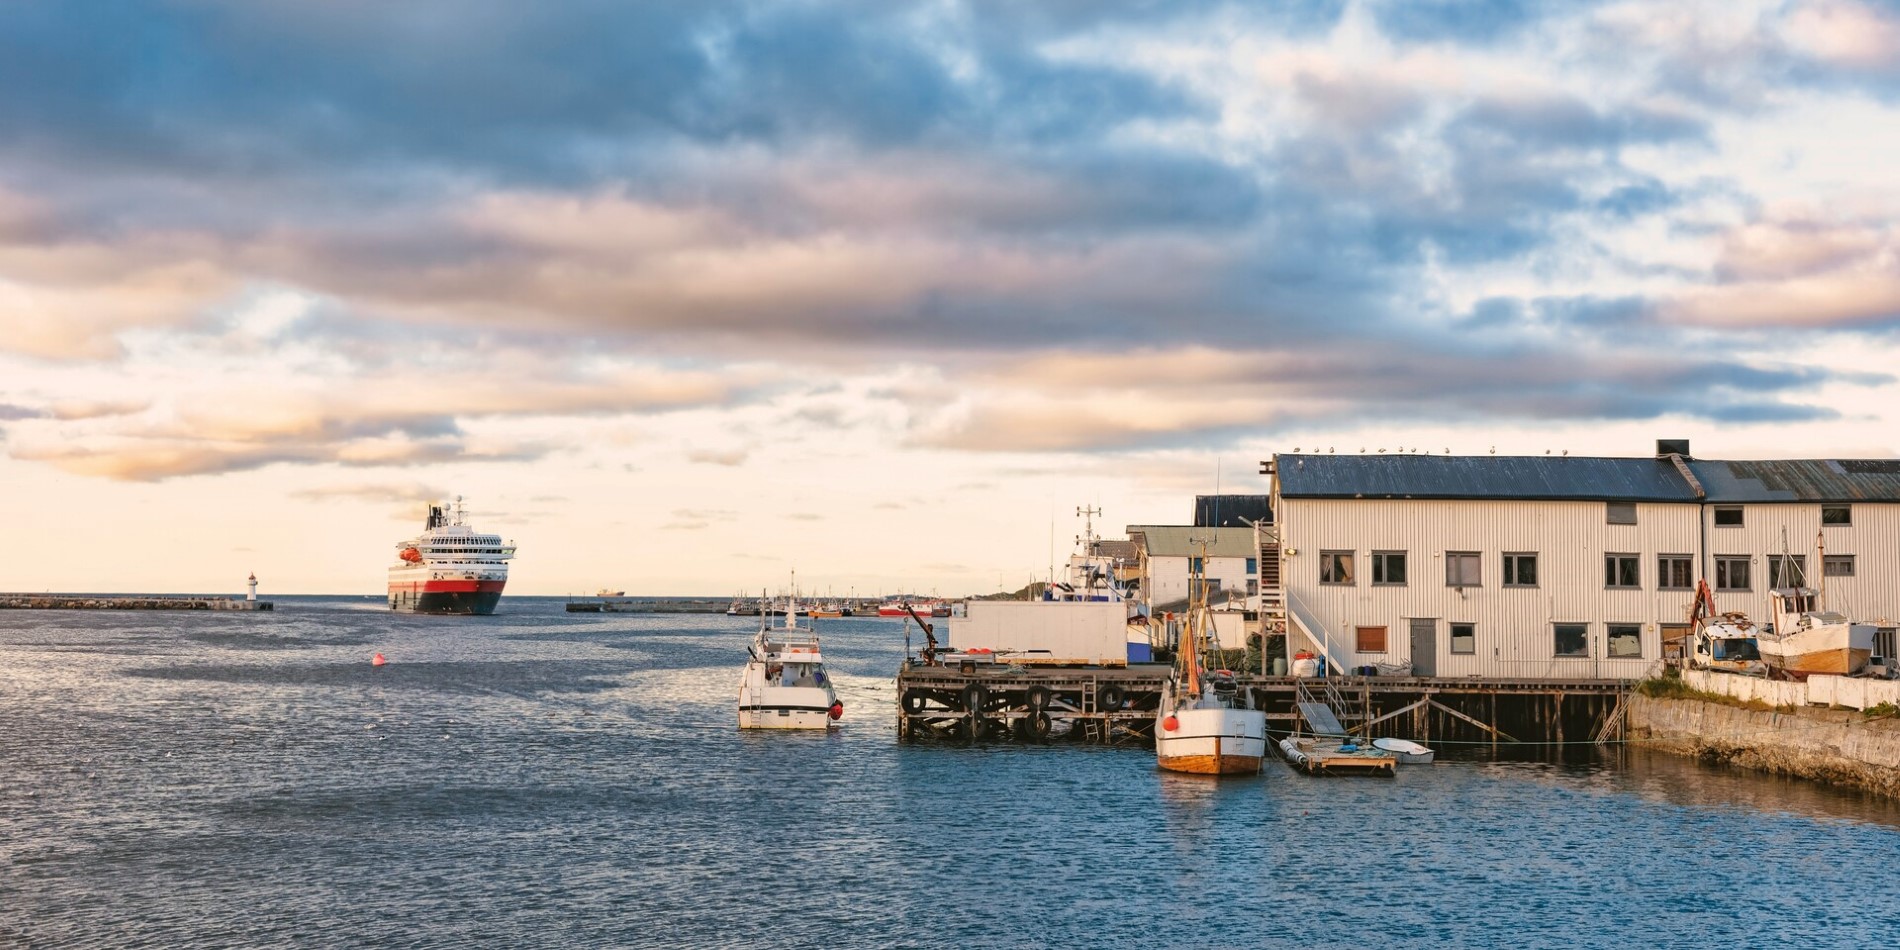 A Hurtigruten ship pulling into the port of Vardø